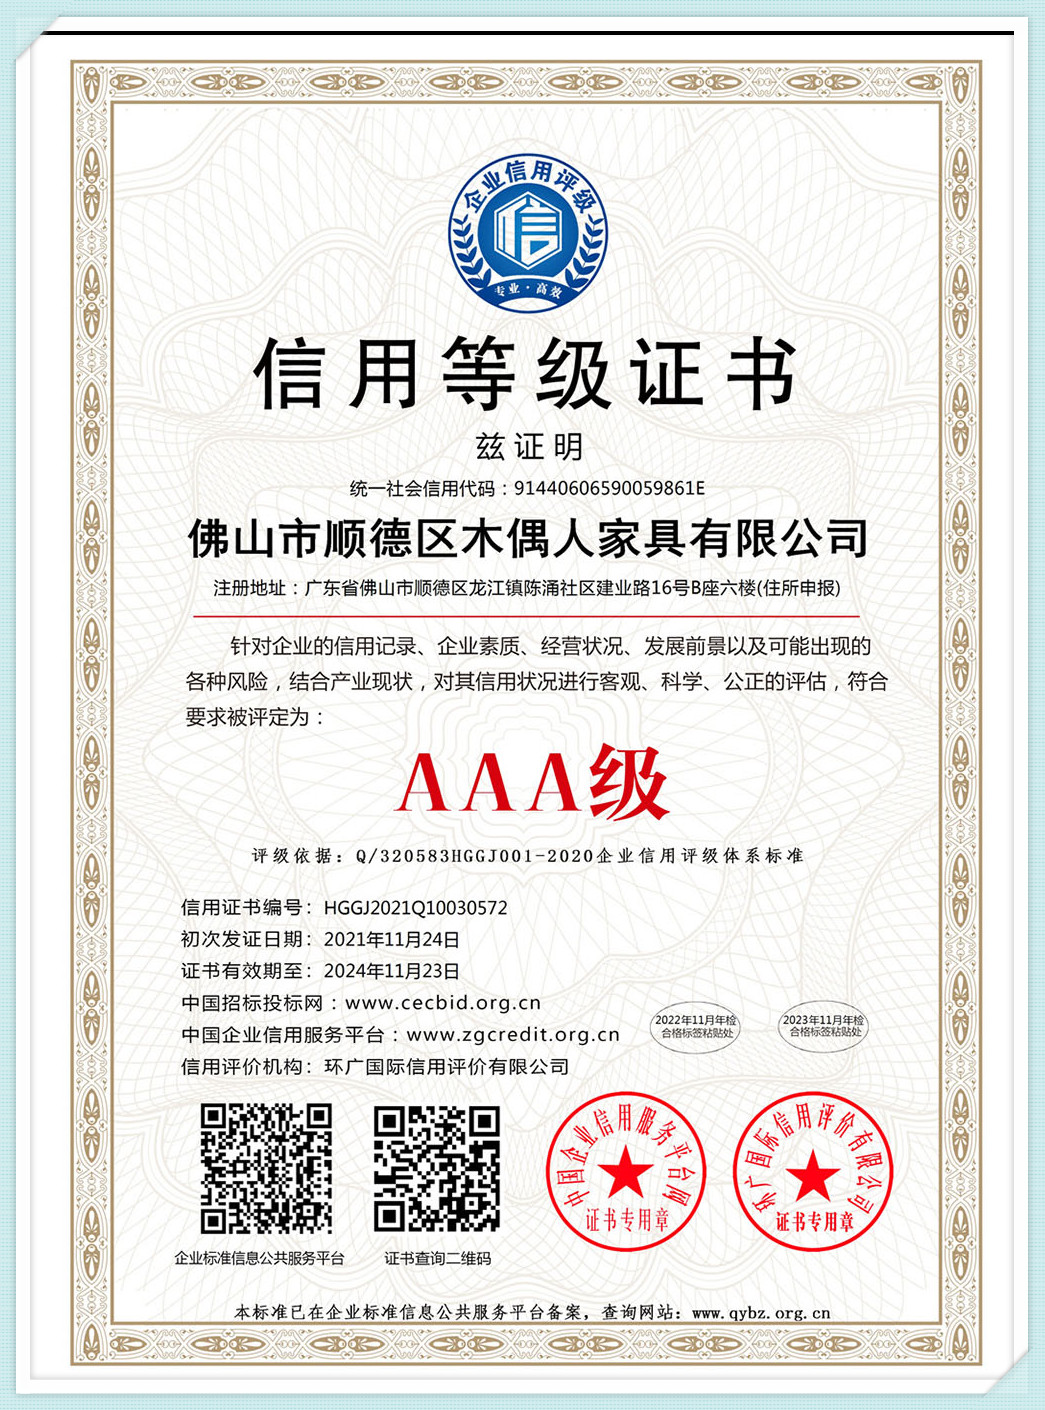 Certificado de calificación crediticia AAA